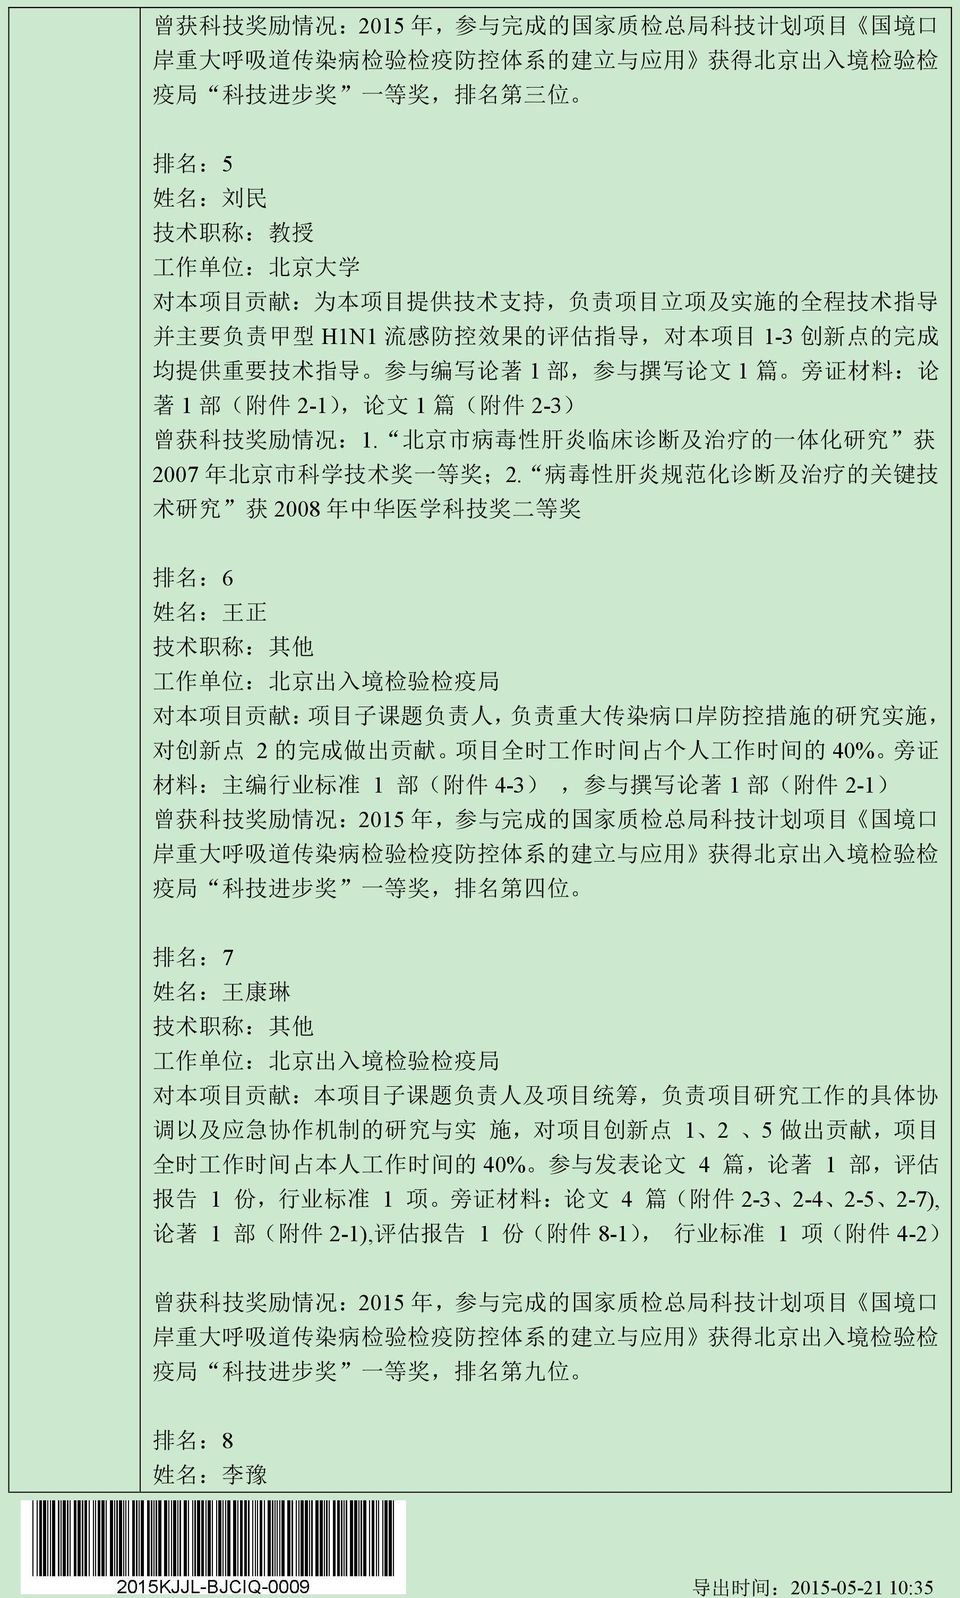 北 京 市 病 毒 性 肝 炎 临 床 诊 断 及 治 疗 的 一 体 化 研 究 获 2007 年 北 京 市 科 学 技 术 奖 一 等 奖 ;2.